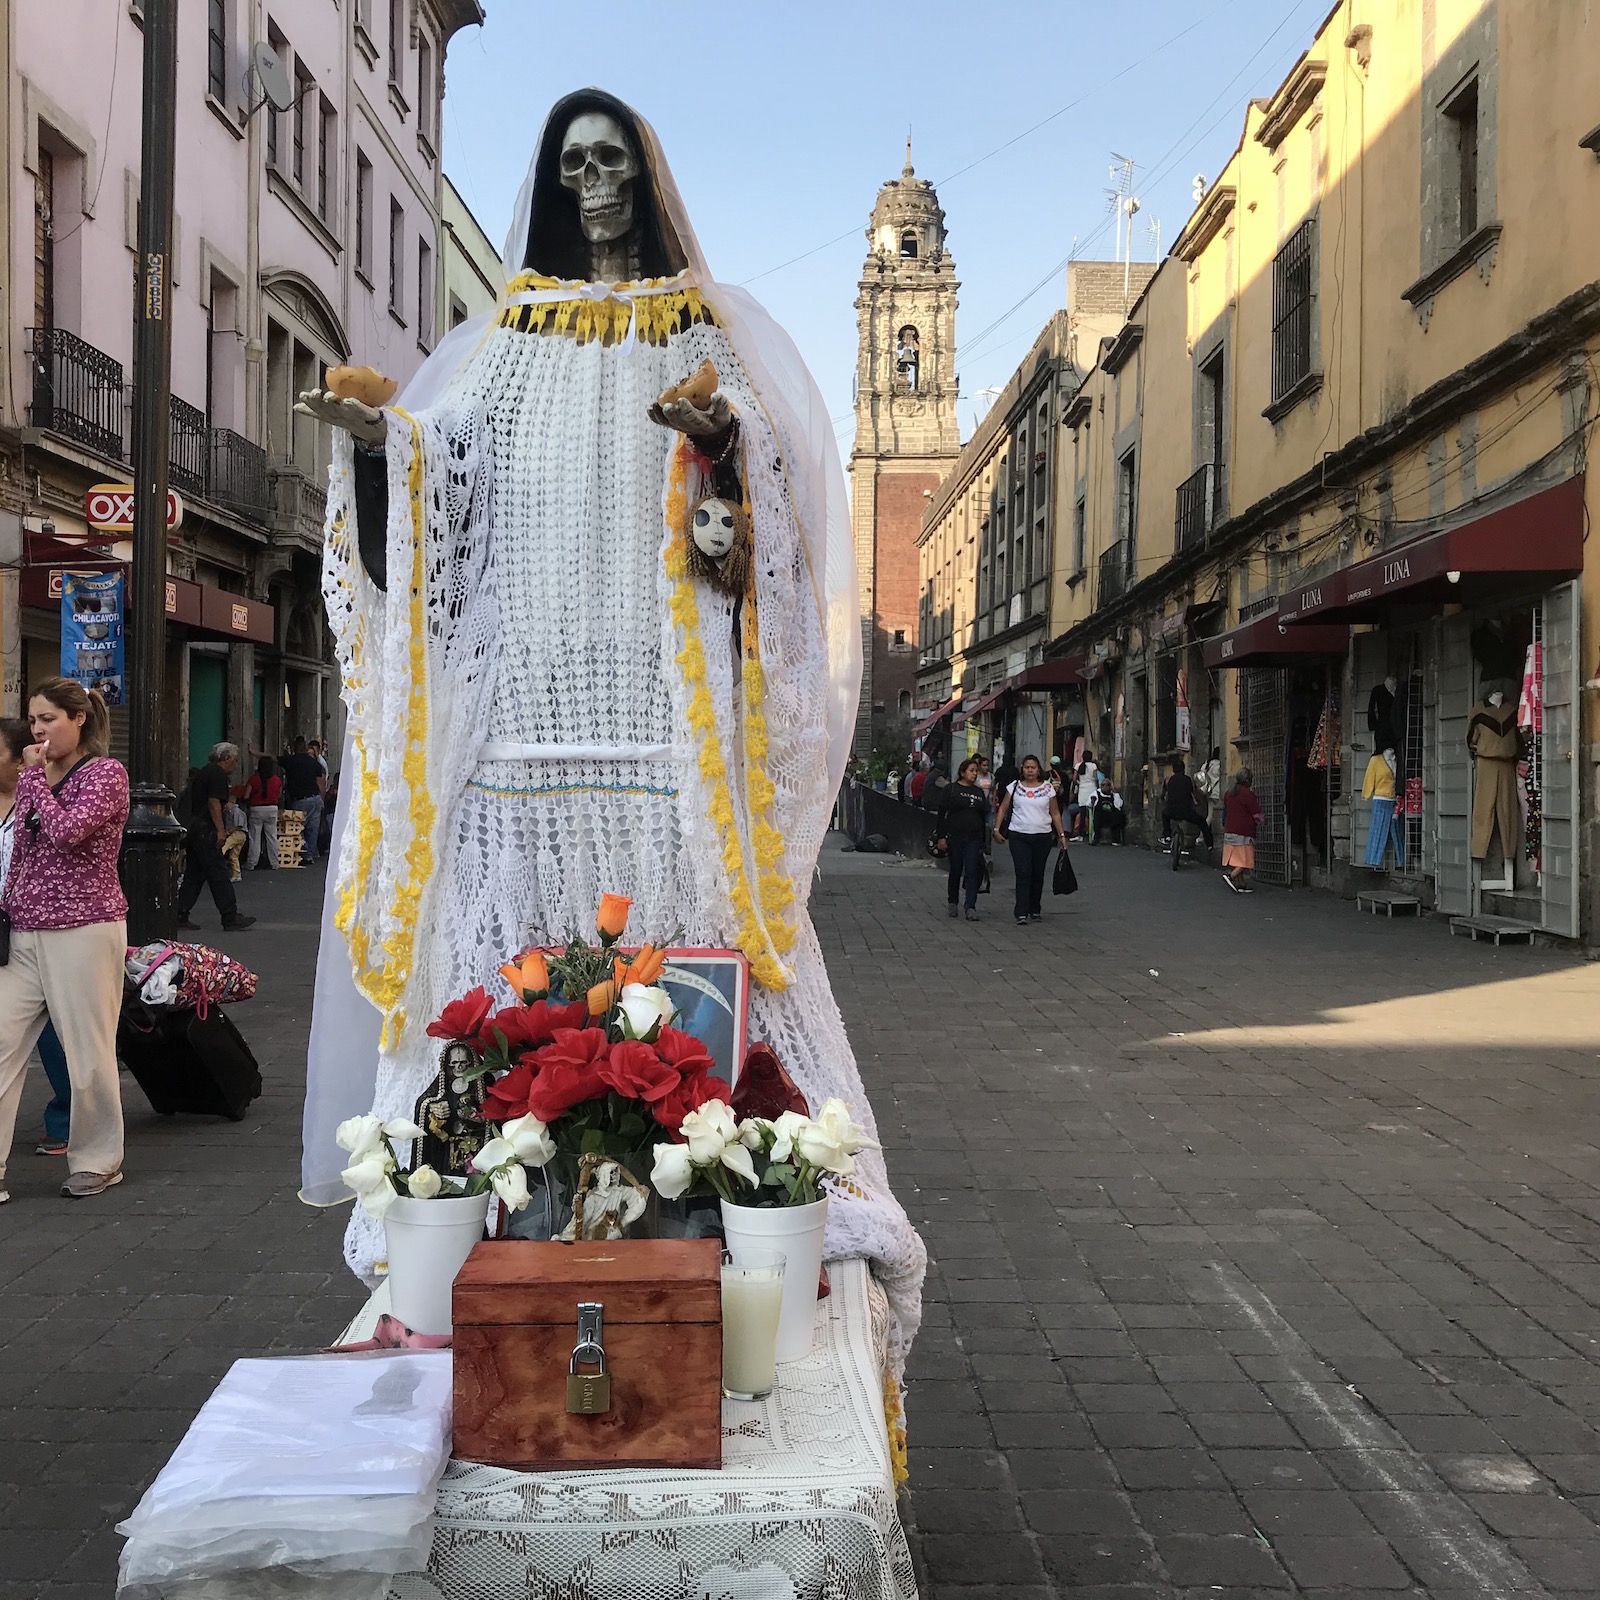 Nuestra Señora de la Santa Muerte, a folk saint in Mexico